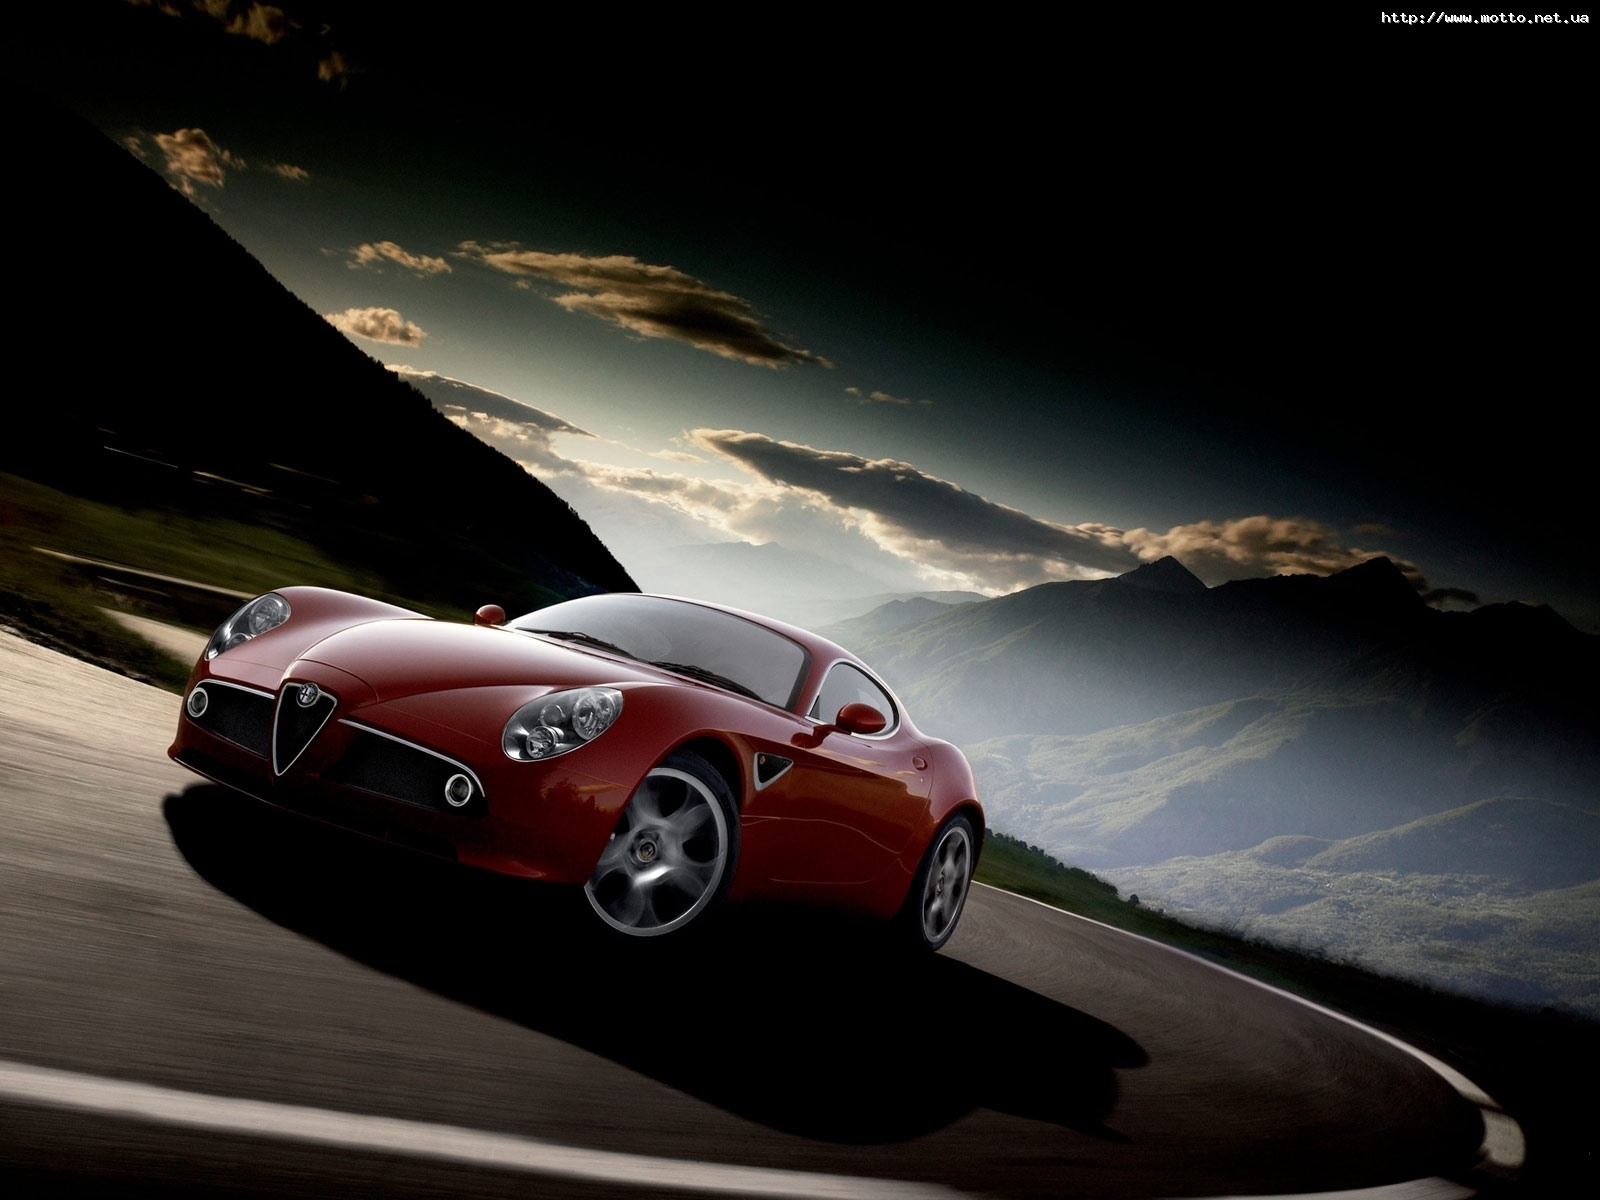 Скачать картинку Альфа Ромео (Alfa Romeo), Транспорт, Дороги, Машины в телефон бесплатно.